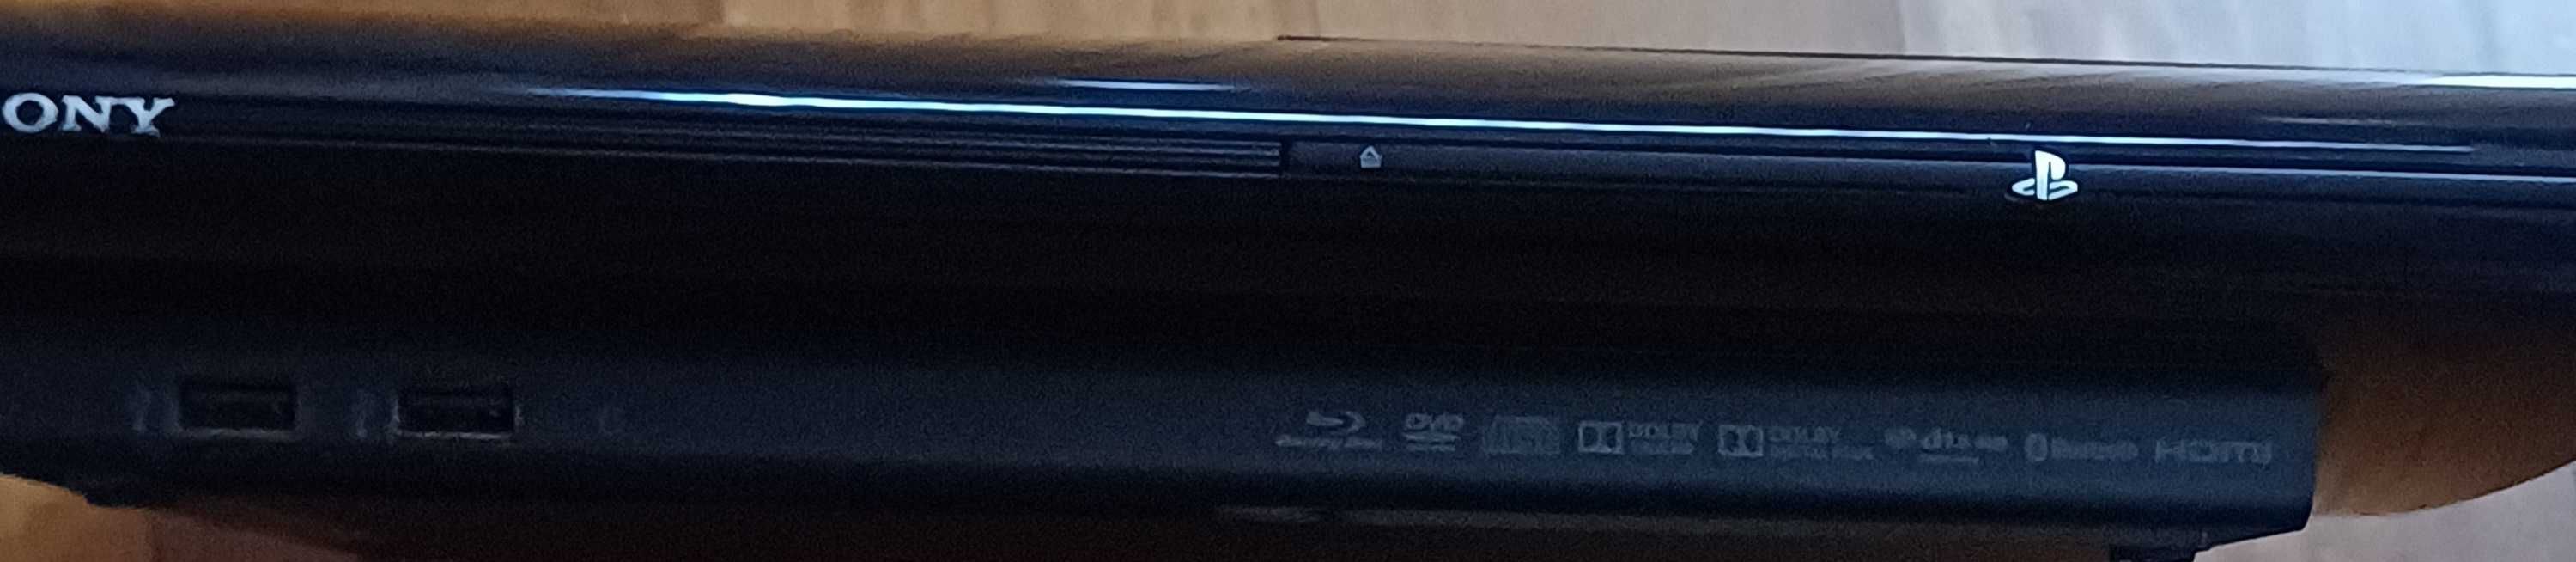 PS3 Super SLIM como nova com caixa